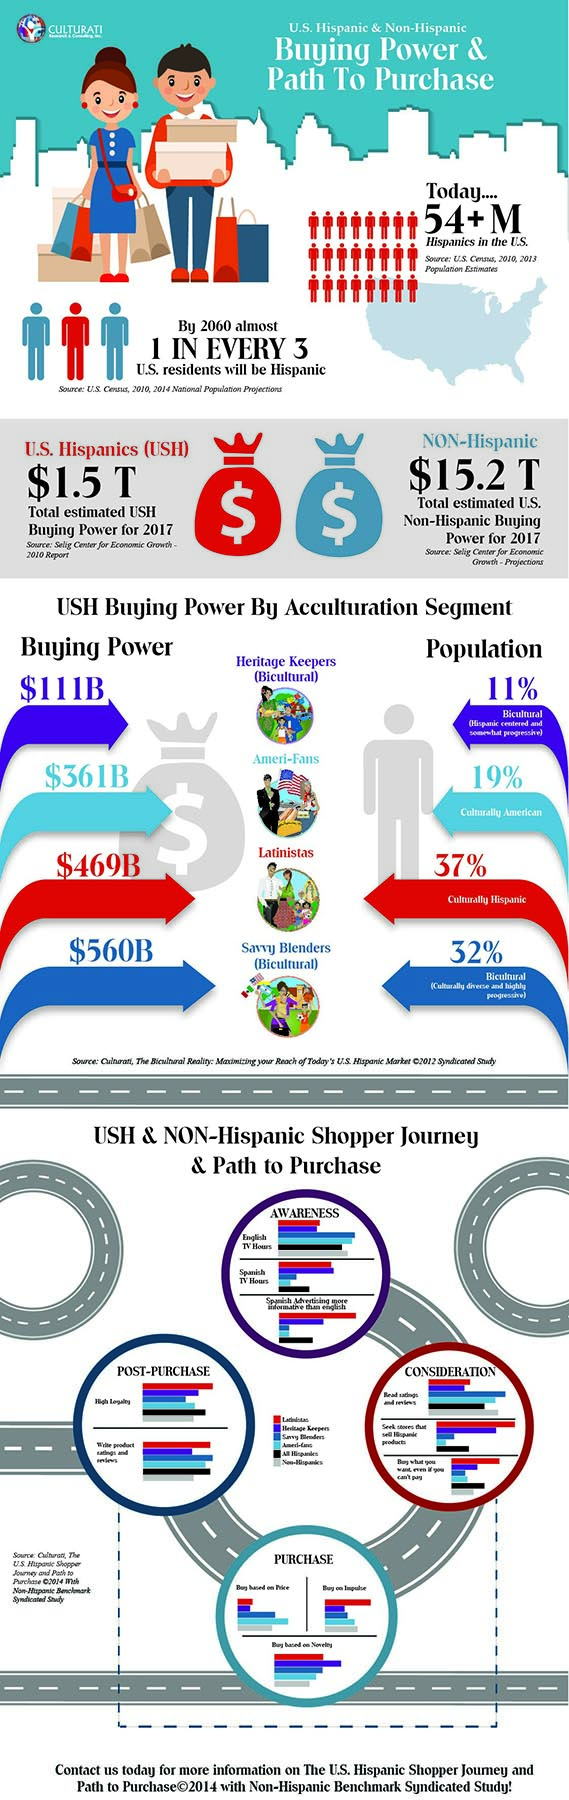 U.S. Hispanic & NonHispanic Buying Power & Path to Purchase